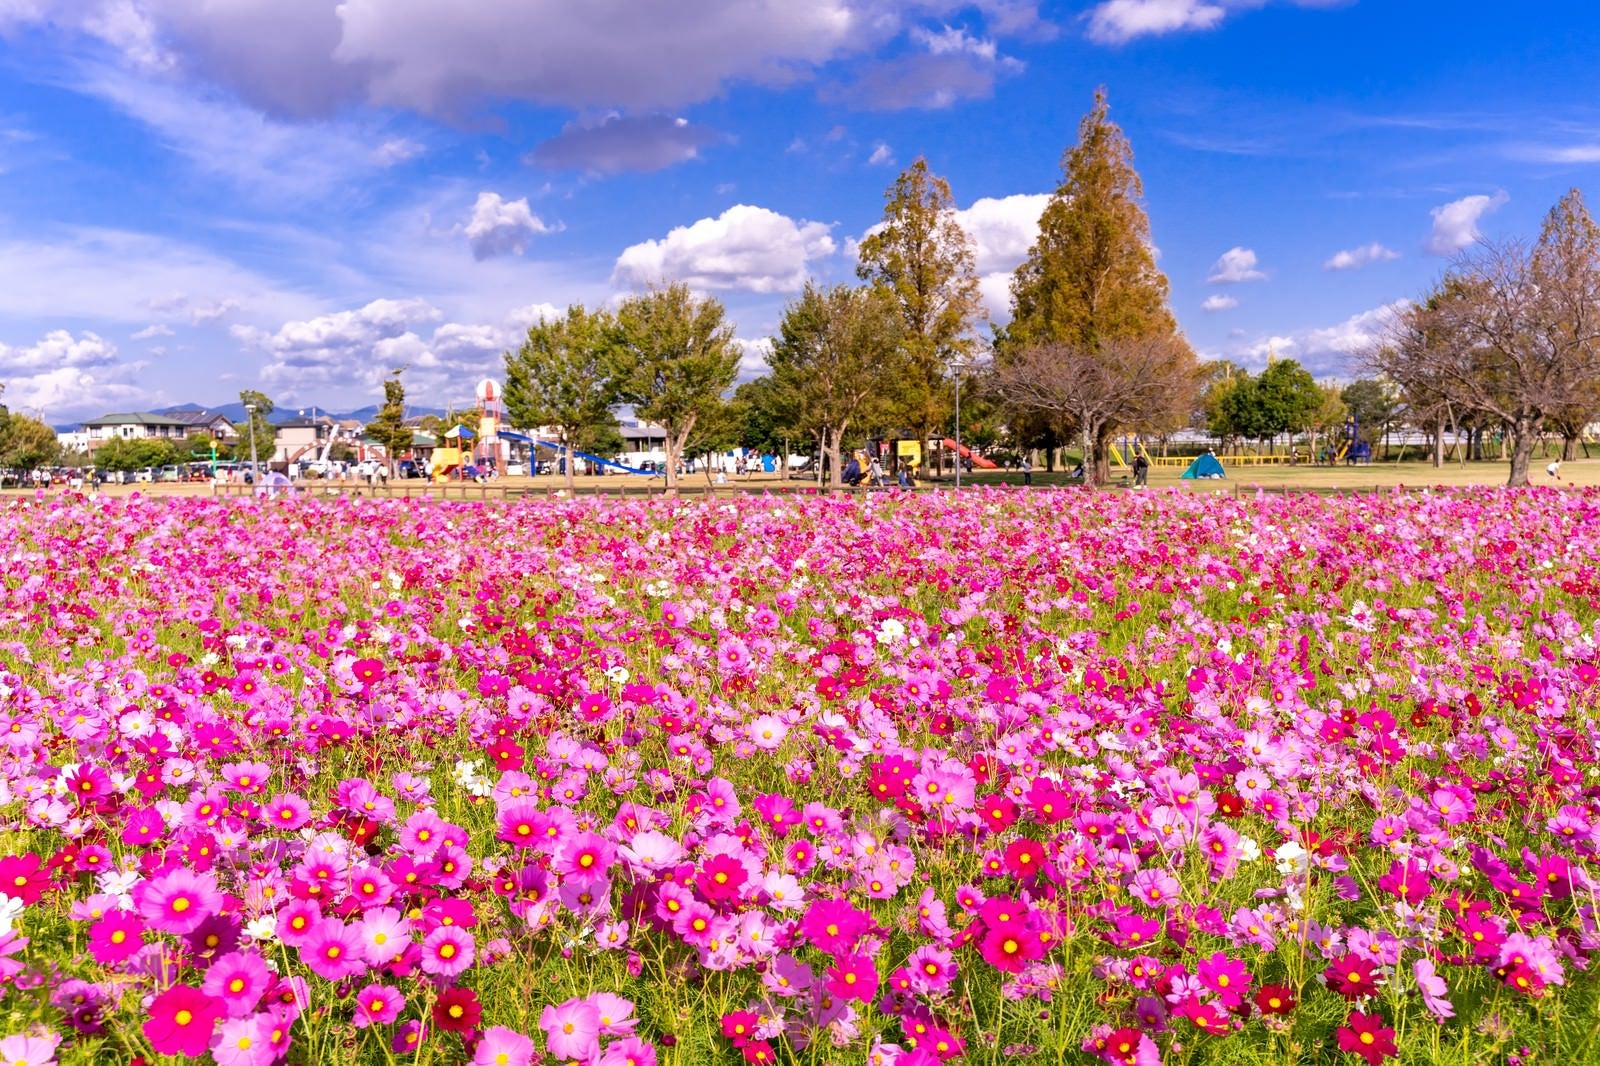 「公園を彩るコスモスの花畑 | フリー素材のぱくたそ」の写真